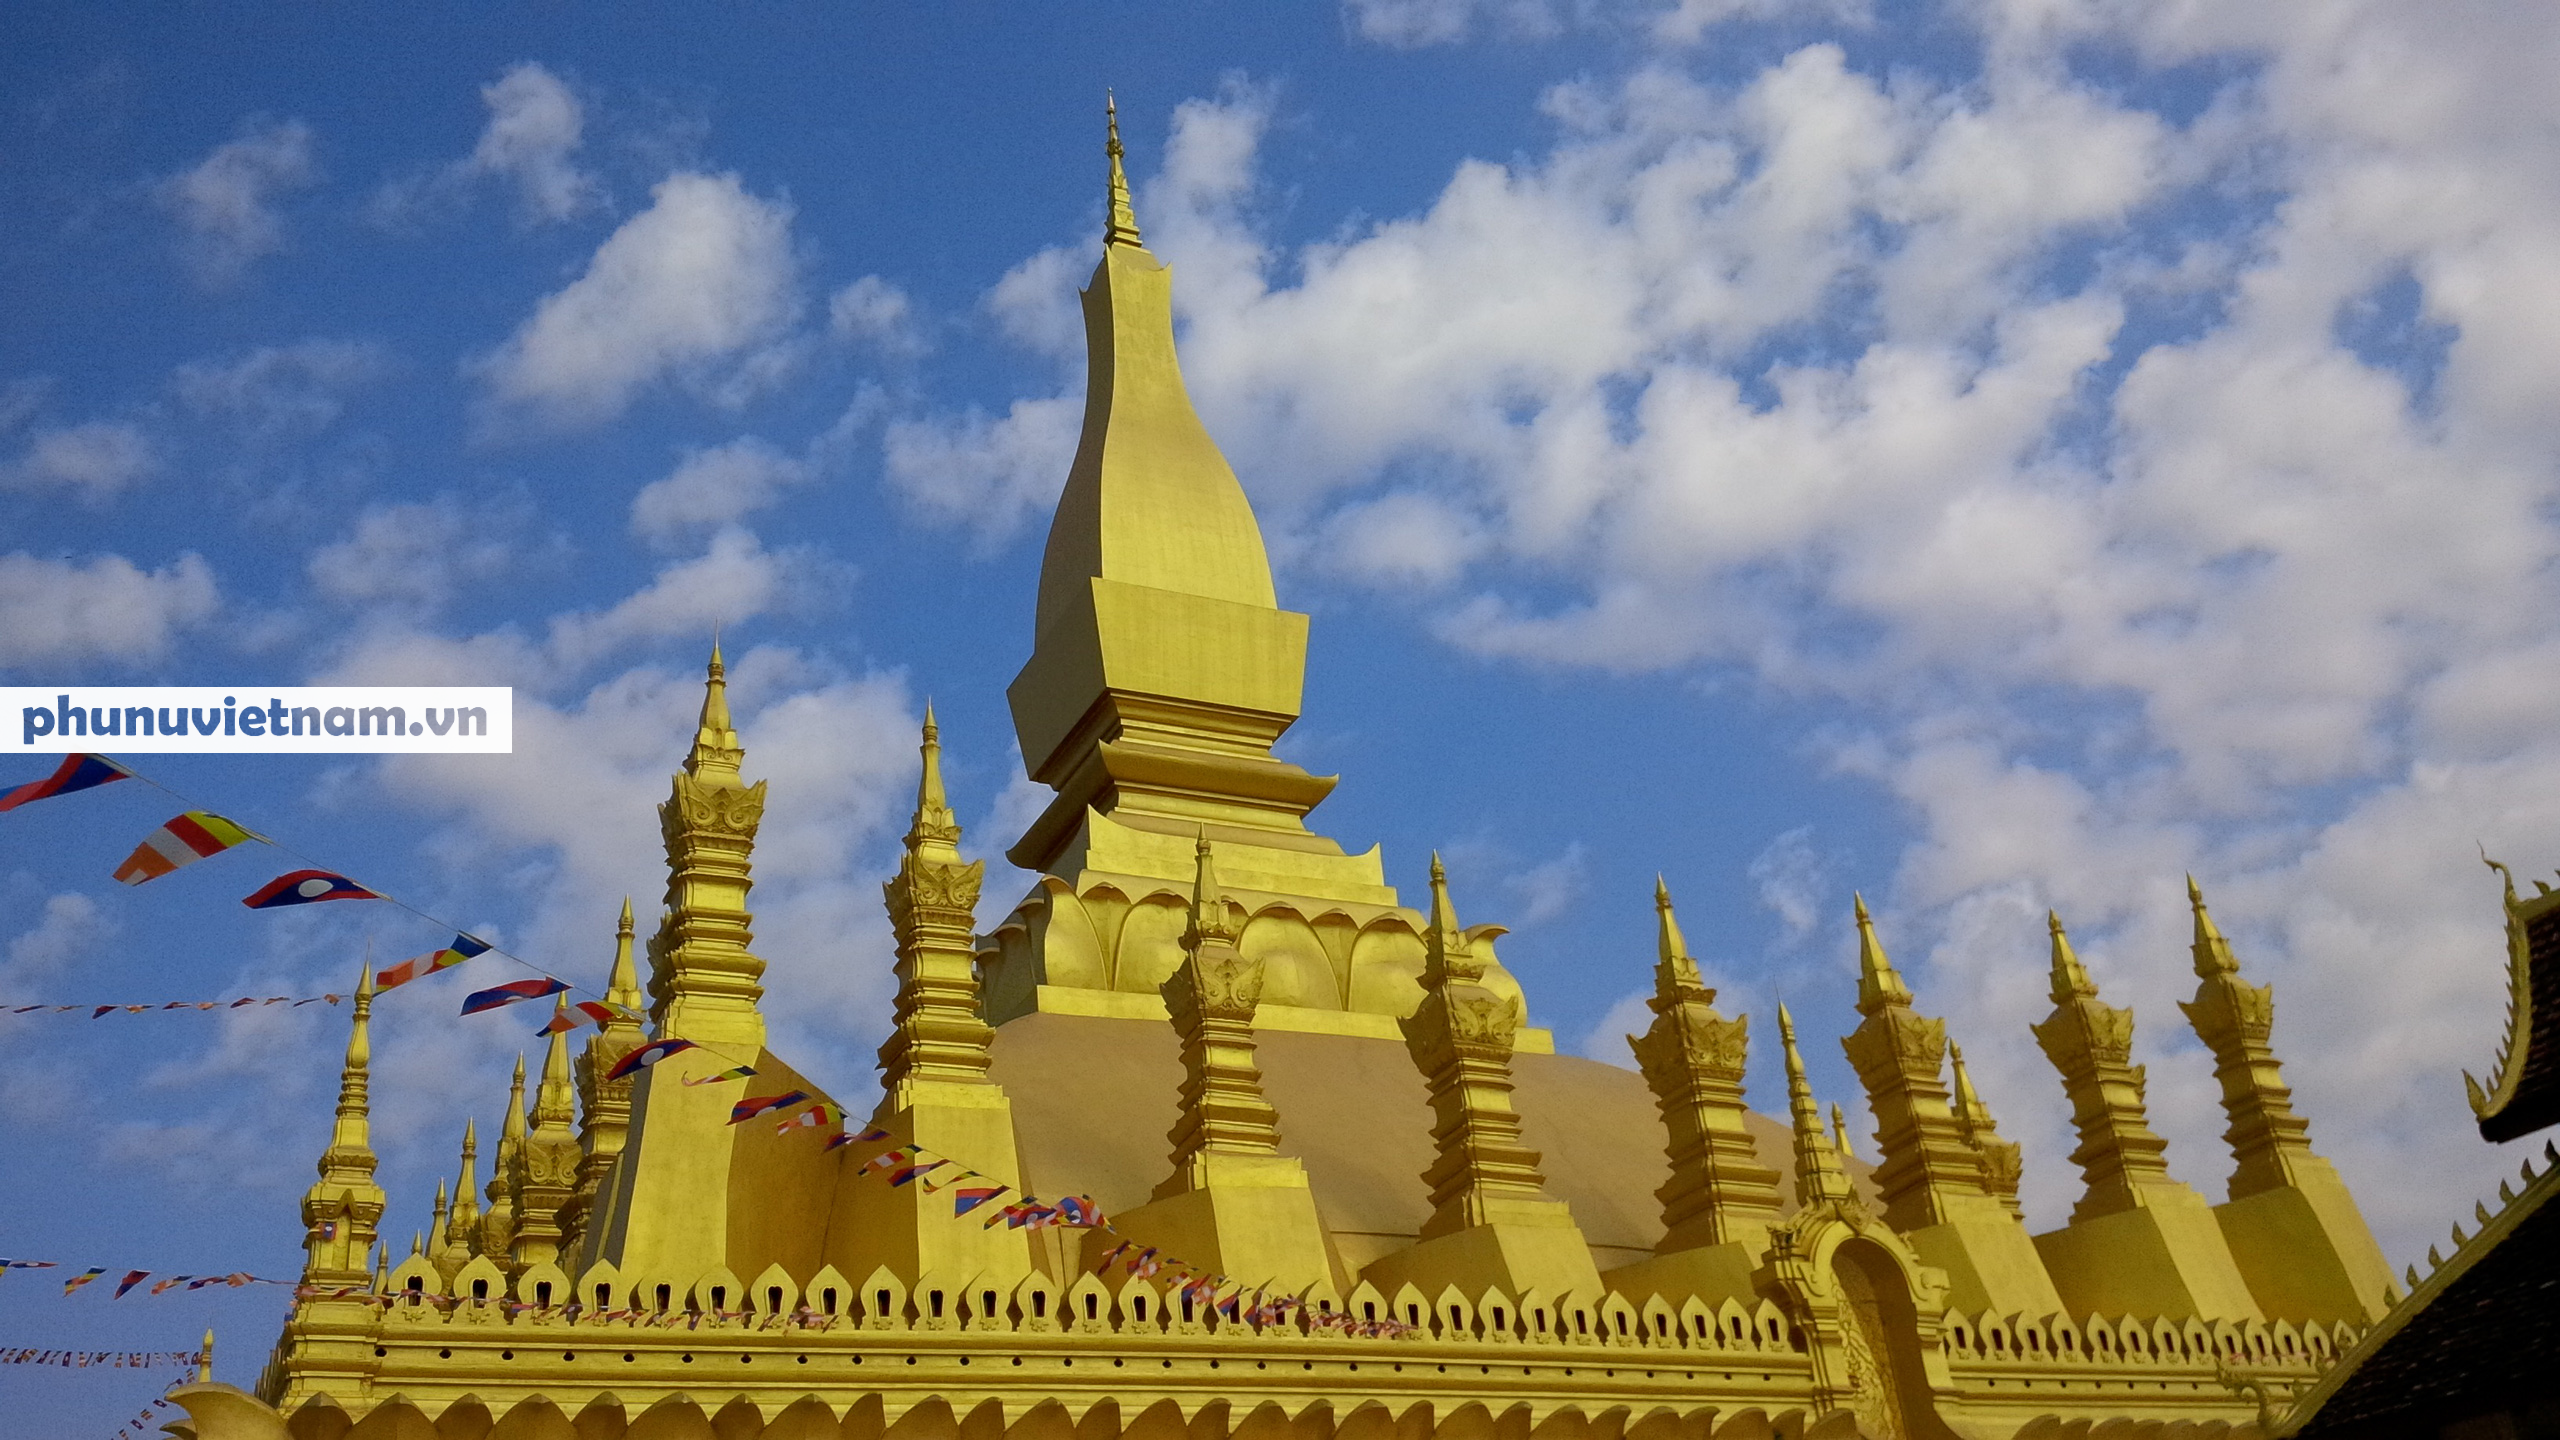 Chiêm ngưỡng ngôi tháp vàng lớn nhất của Lào, gần 500 tuổi tráng lệ giữa đất trời - Ảnh 2.